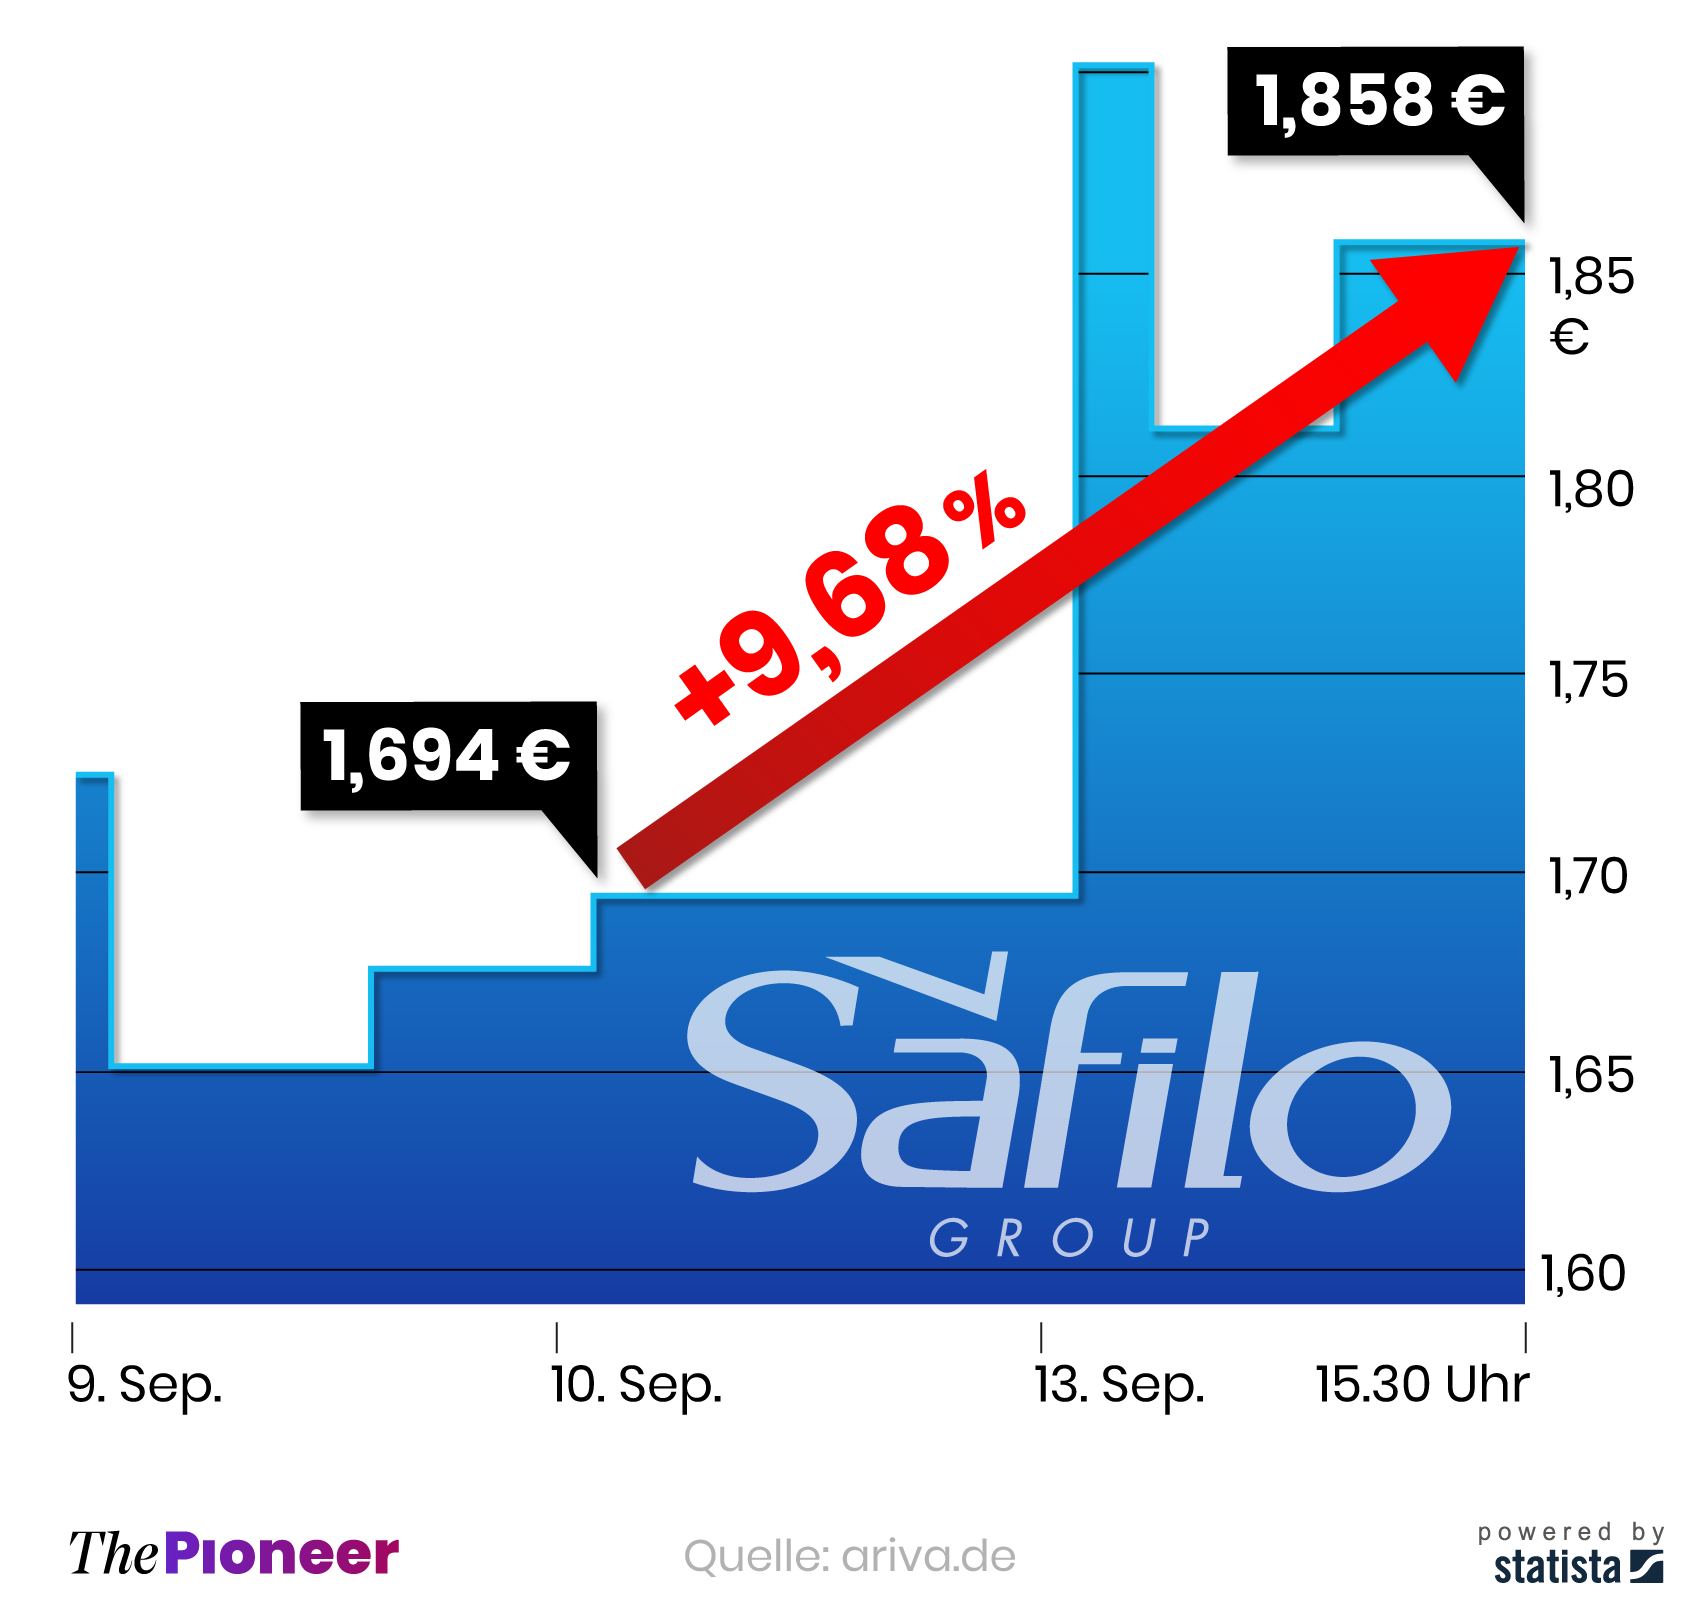  Kursverlauf der Aktie Safilo Group seit dem 9. September 2021, in Euro